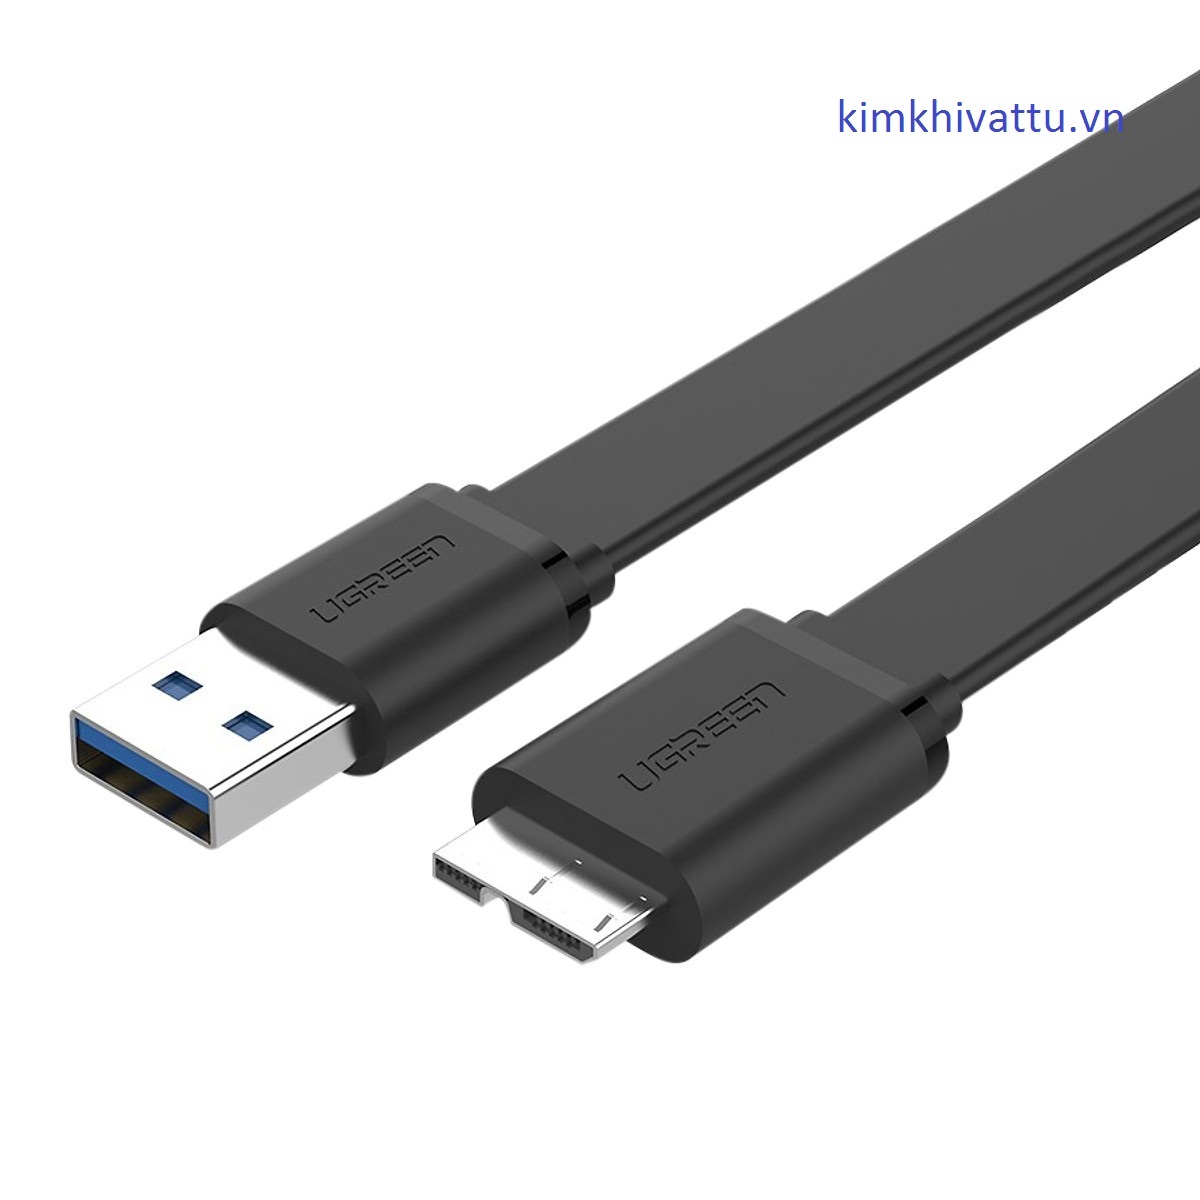 Cáp chuyển đổi USB 3.0 sang Micro B 1.5m Ugreen 10810